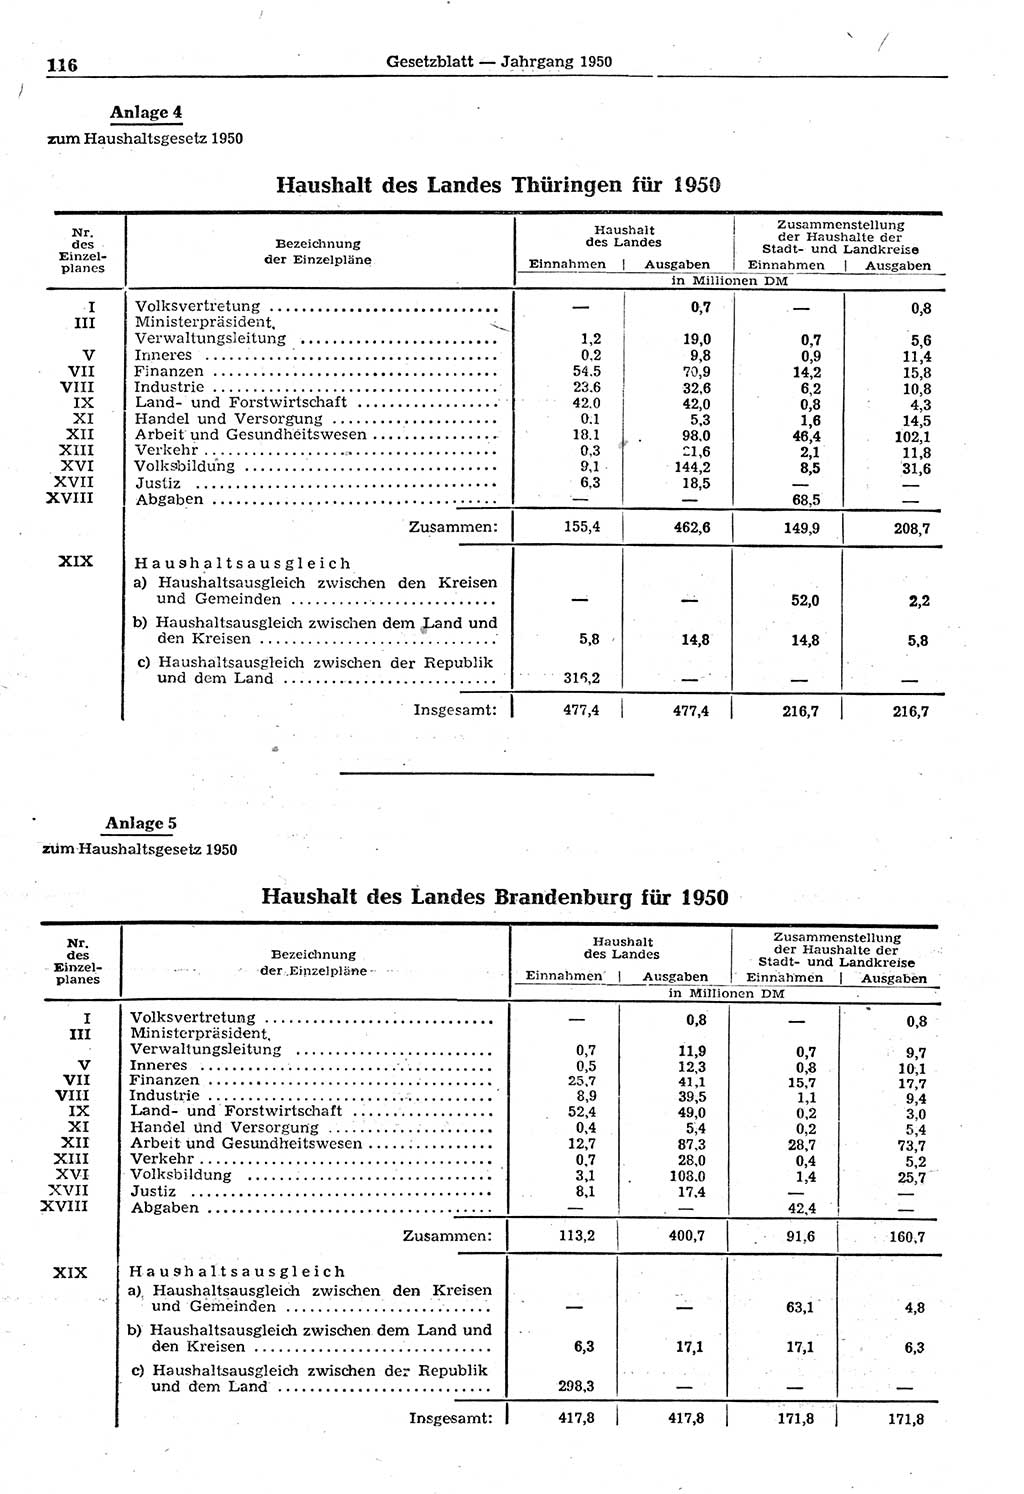 Gesetzblatt (GBl.) der Deutschen Demokratischen Republik (DDR) 1950, Seite 116 (GBl. DDR 1950, S. 116)